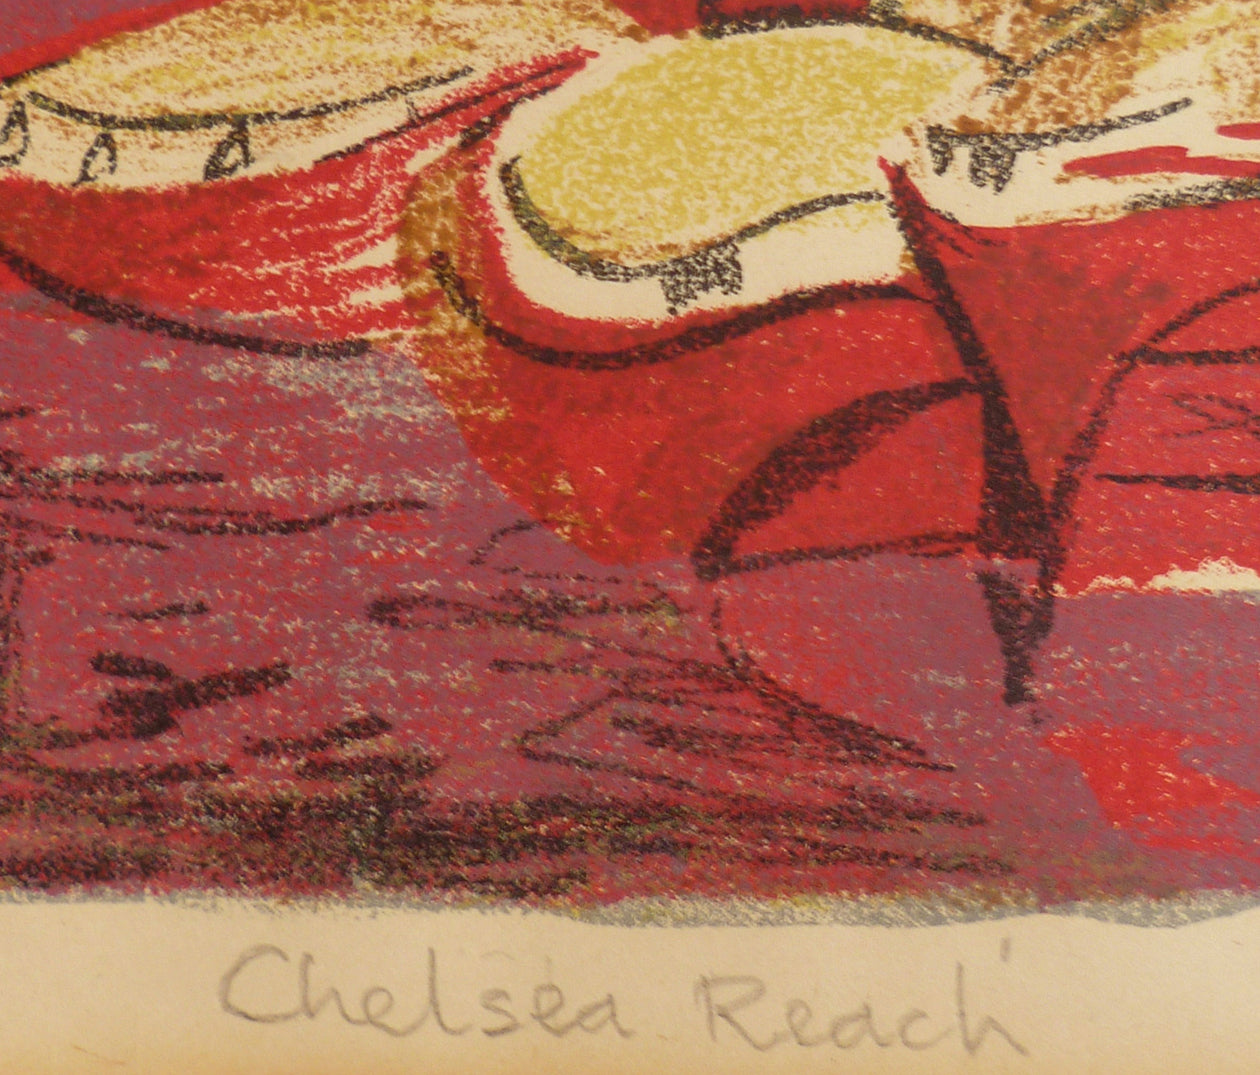 Trevor Jones Colour Lithograph Chelsea Reach Title image